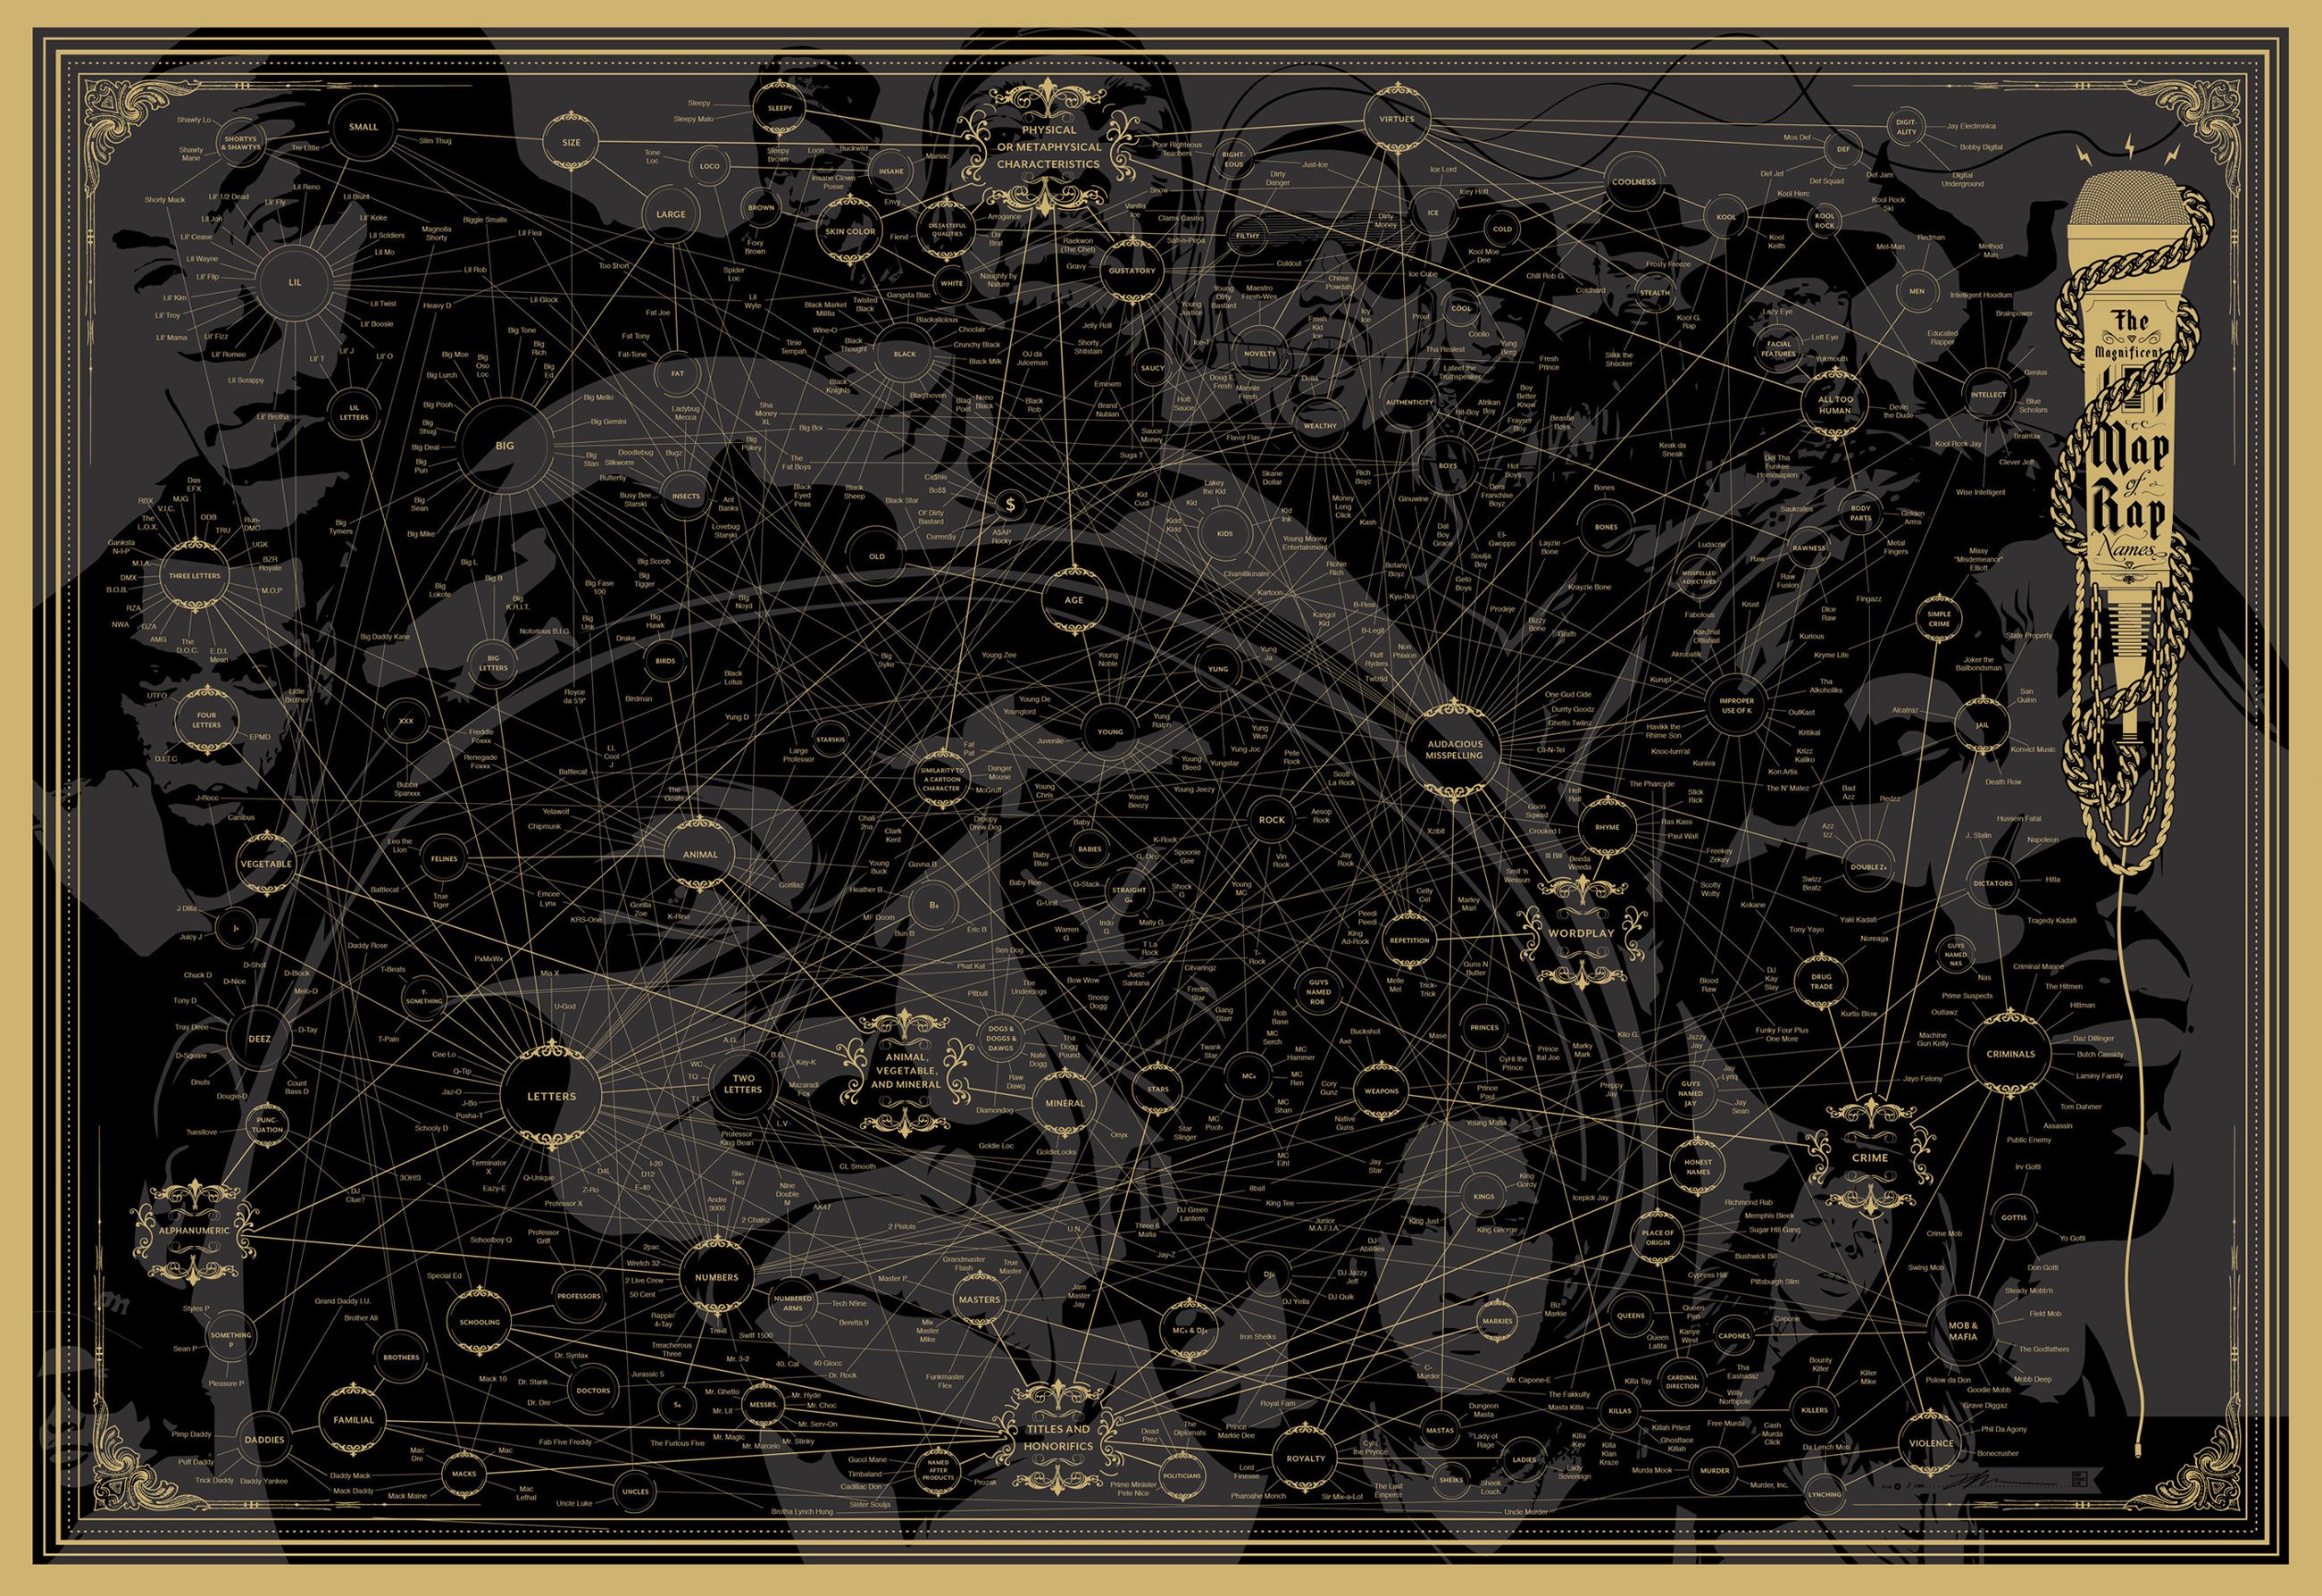 Rap Rapper Hip Hop Urban Gangsta - Magnificent Map Of Rap Names - HD Wallpaper 